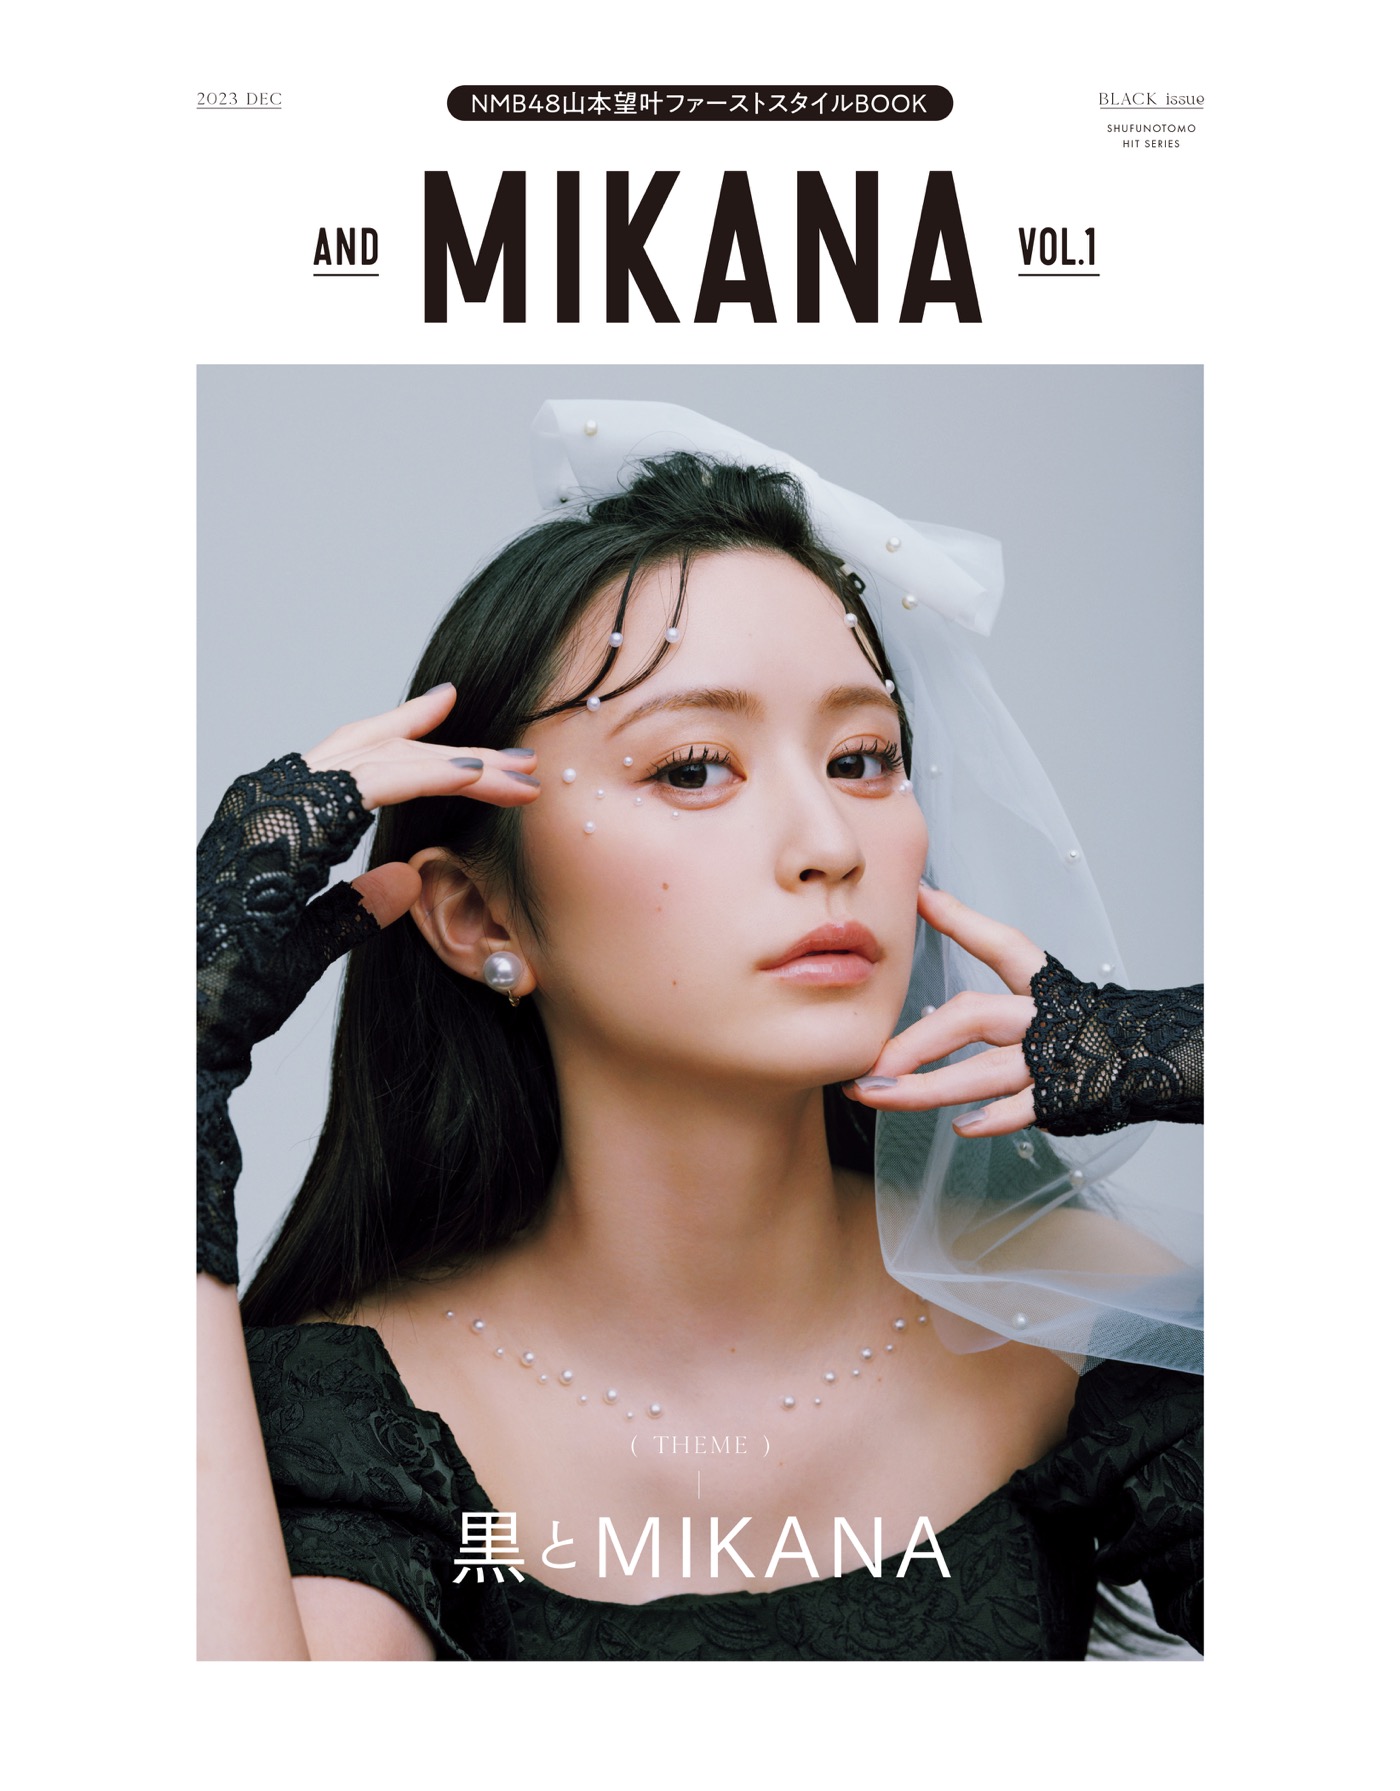 NMB48山本望叶、顔面国宝とも称されるビジュアルで魅せるファーストスタイルBOOK『and MIKANA』を発売